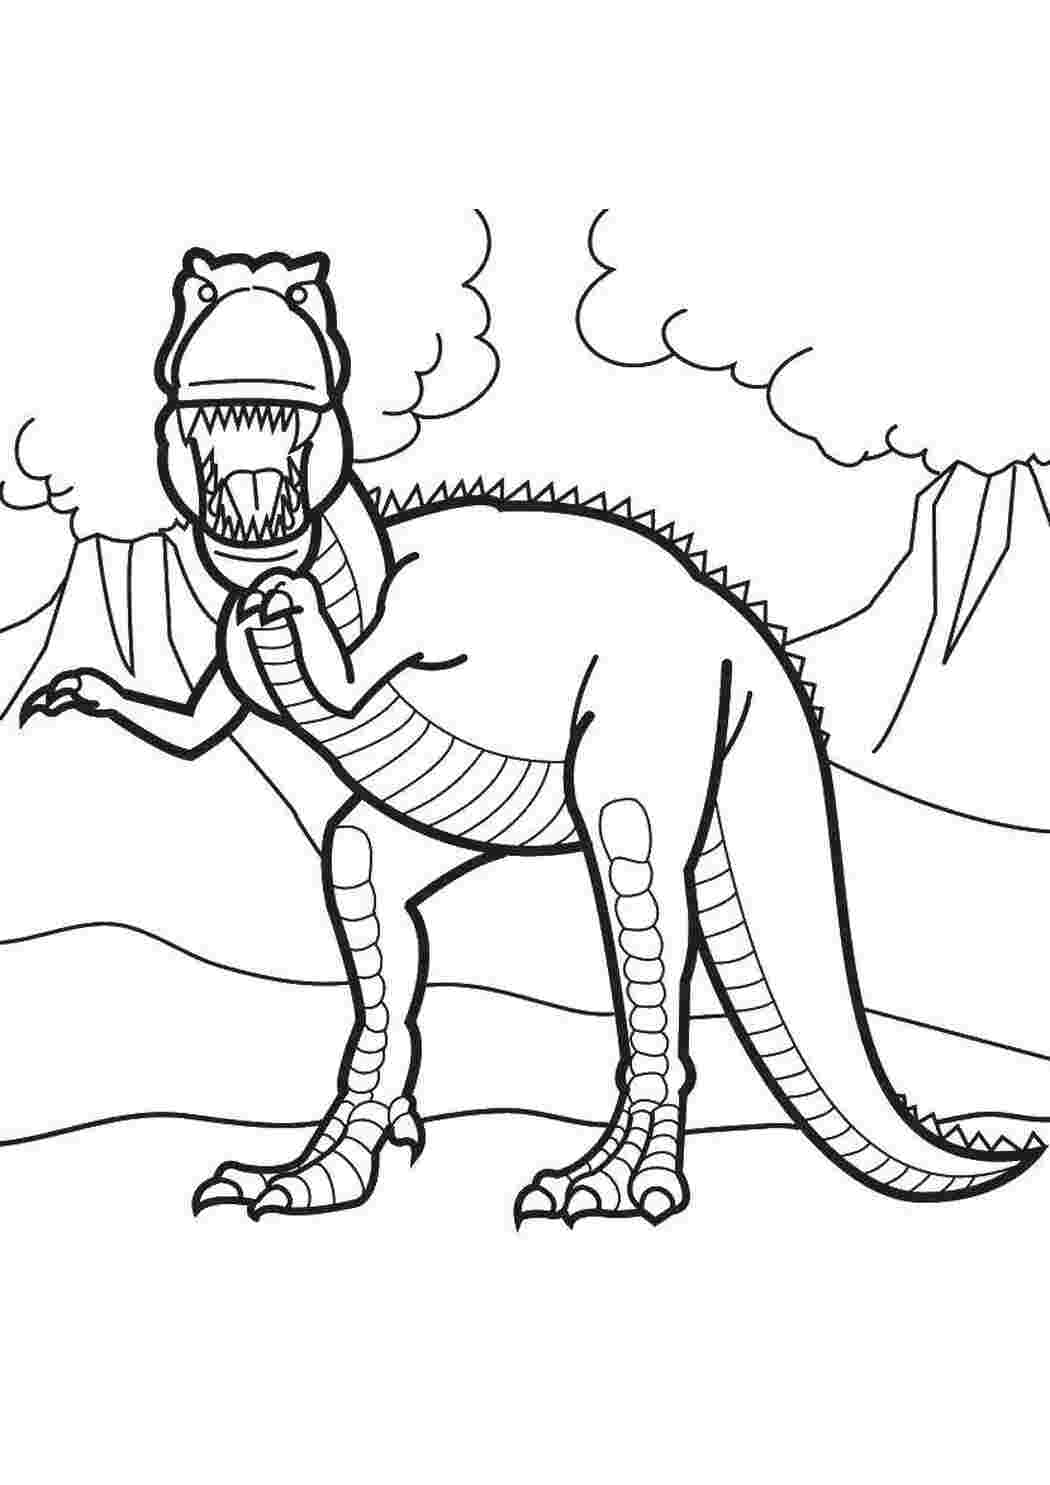 Динозавр раскраска распечатать а4. Дино рекс раскраска. Терекс динозавры раскраска. Динозавр раскраска для детей. Шонизавр раскраска.